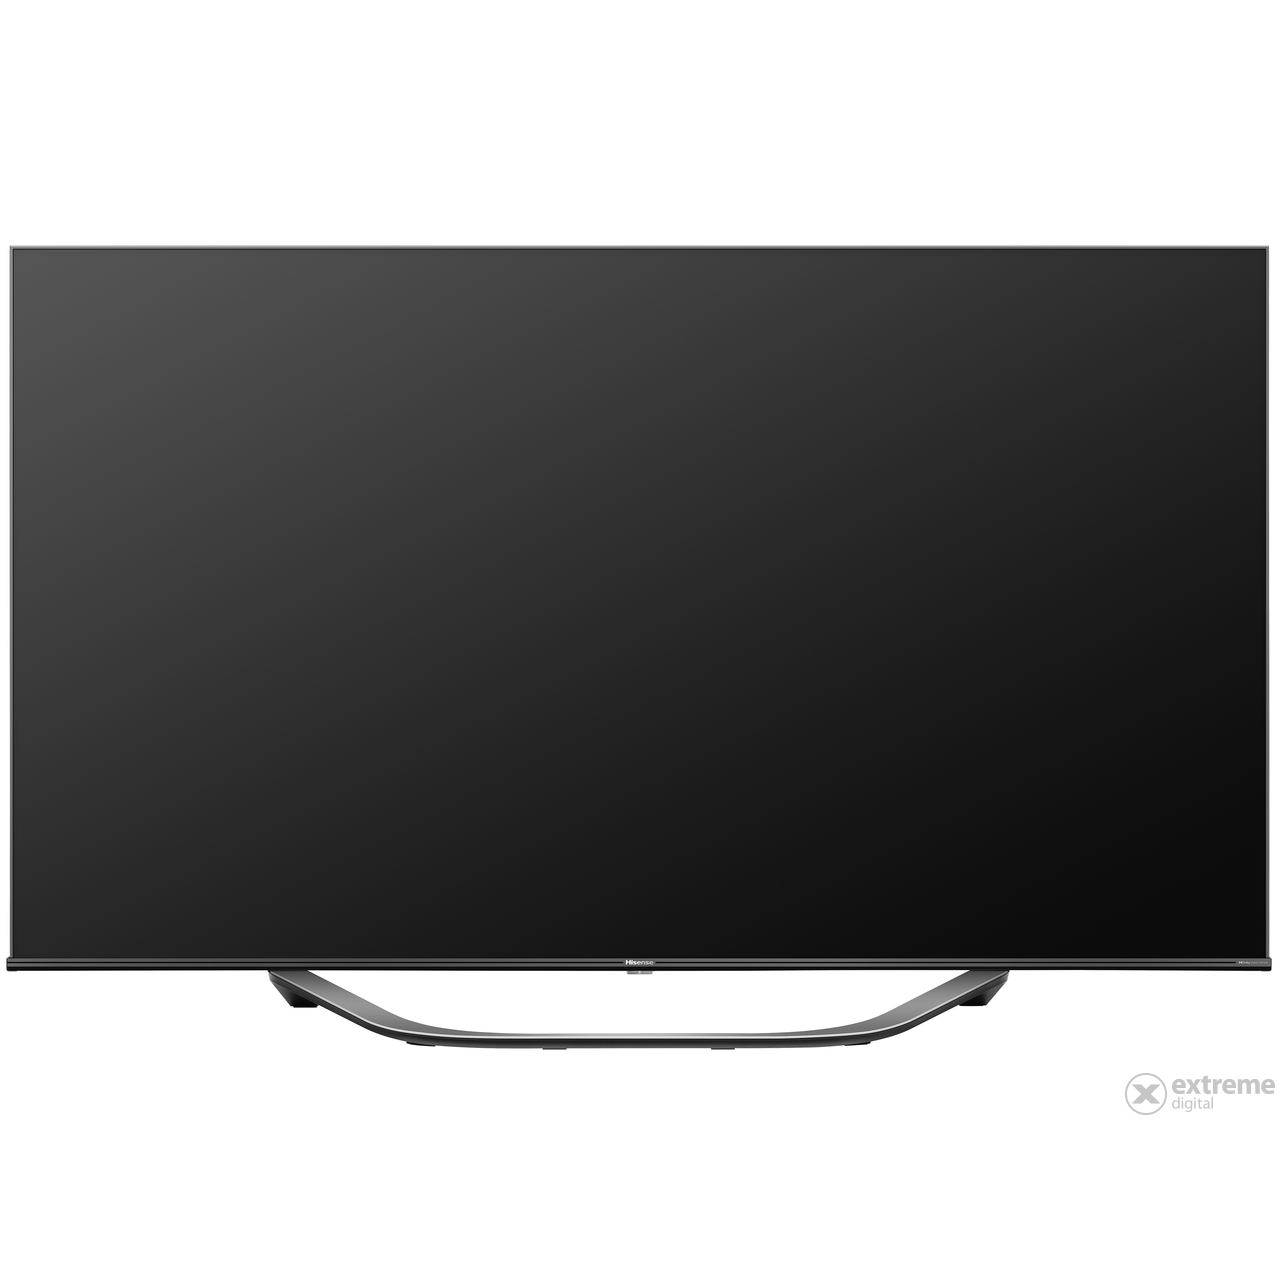 Hisense 55U7HQ UHD Smart ULED TV